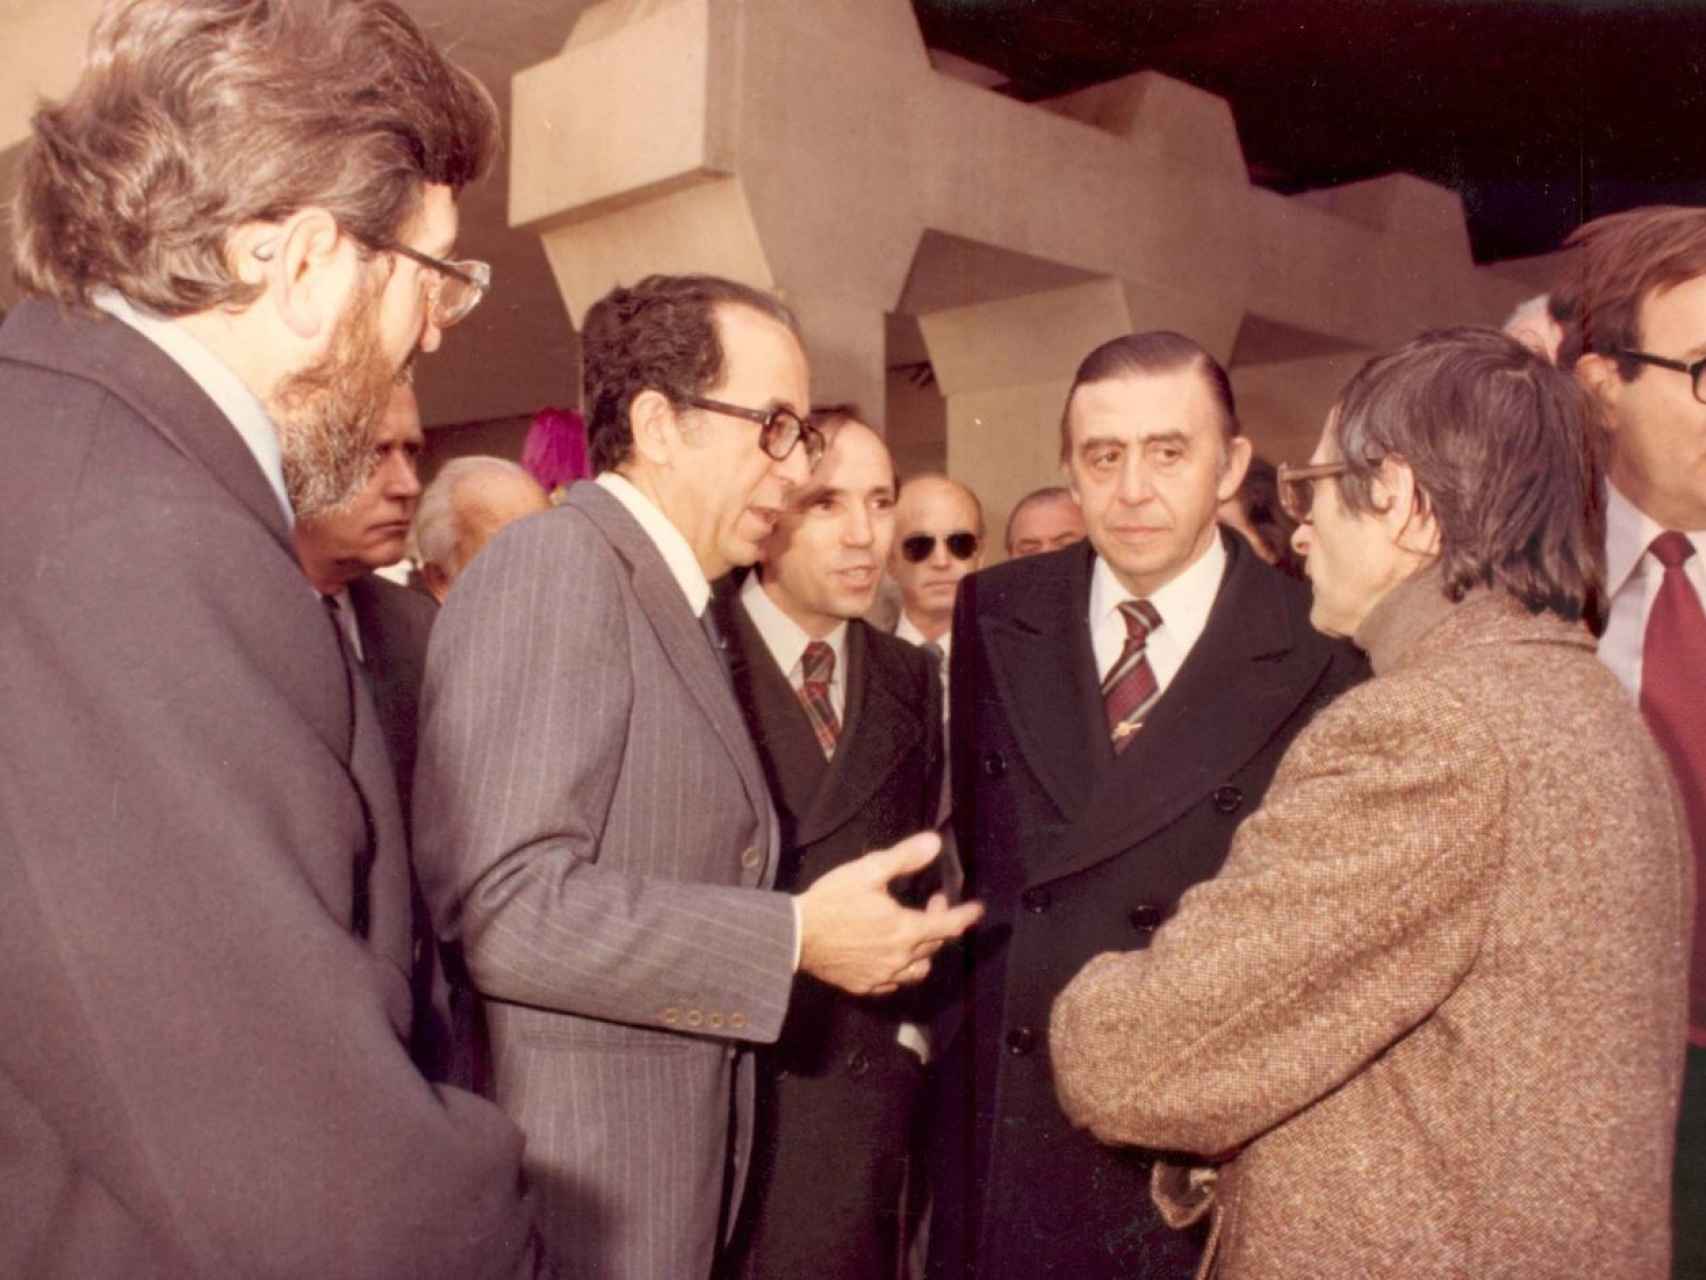 Inauguración oficial, en febrero de 1979, con Julio Martínez Calzón, José Luis Álvarez, José Antonio Fdez Ordóñez, Luis María Huete, JOsé María Subirachs y Ramón Tamames.